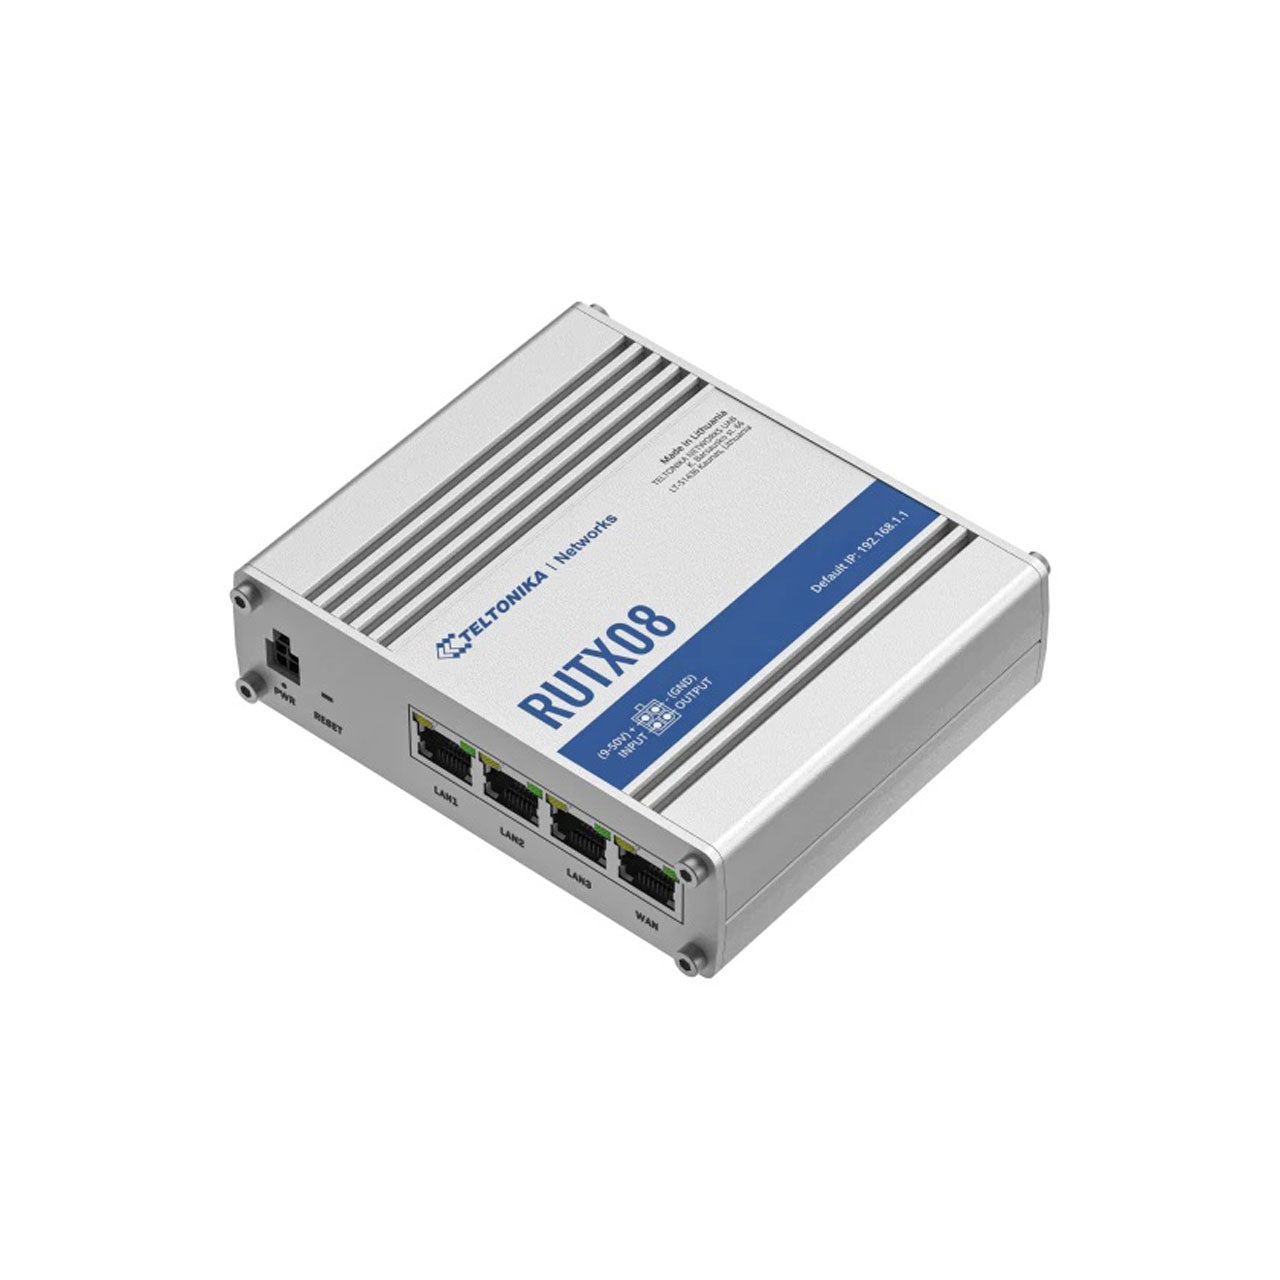 Teltonka RUTX08000200 - RUTX08 Industrial Gigabit Ethernet Router, US Power Supply, 4RJ45